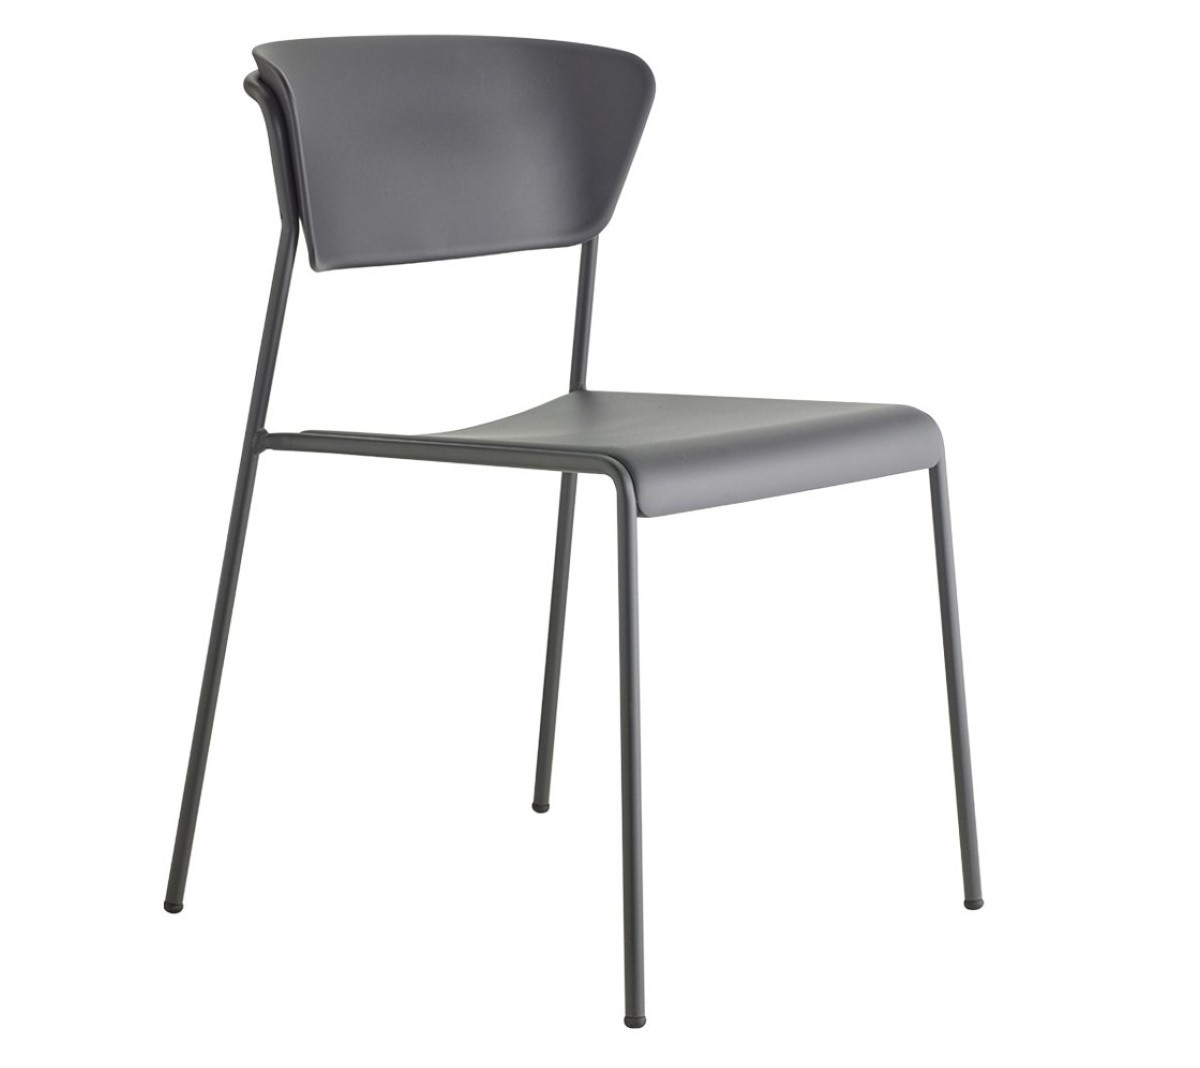 Chair - Lisa Technopolymer Chair - Furniture Designhouse